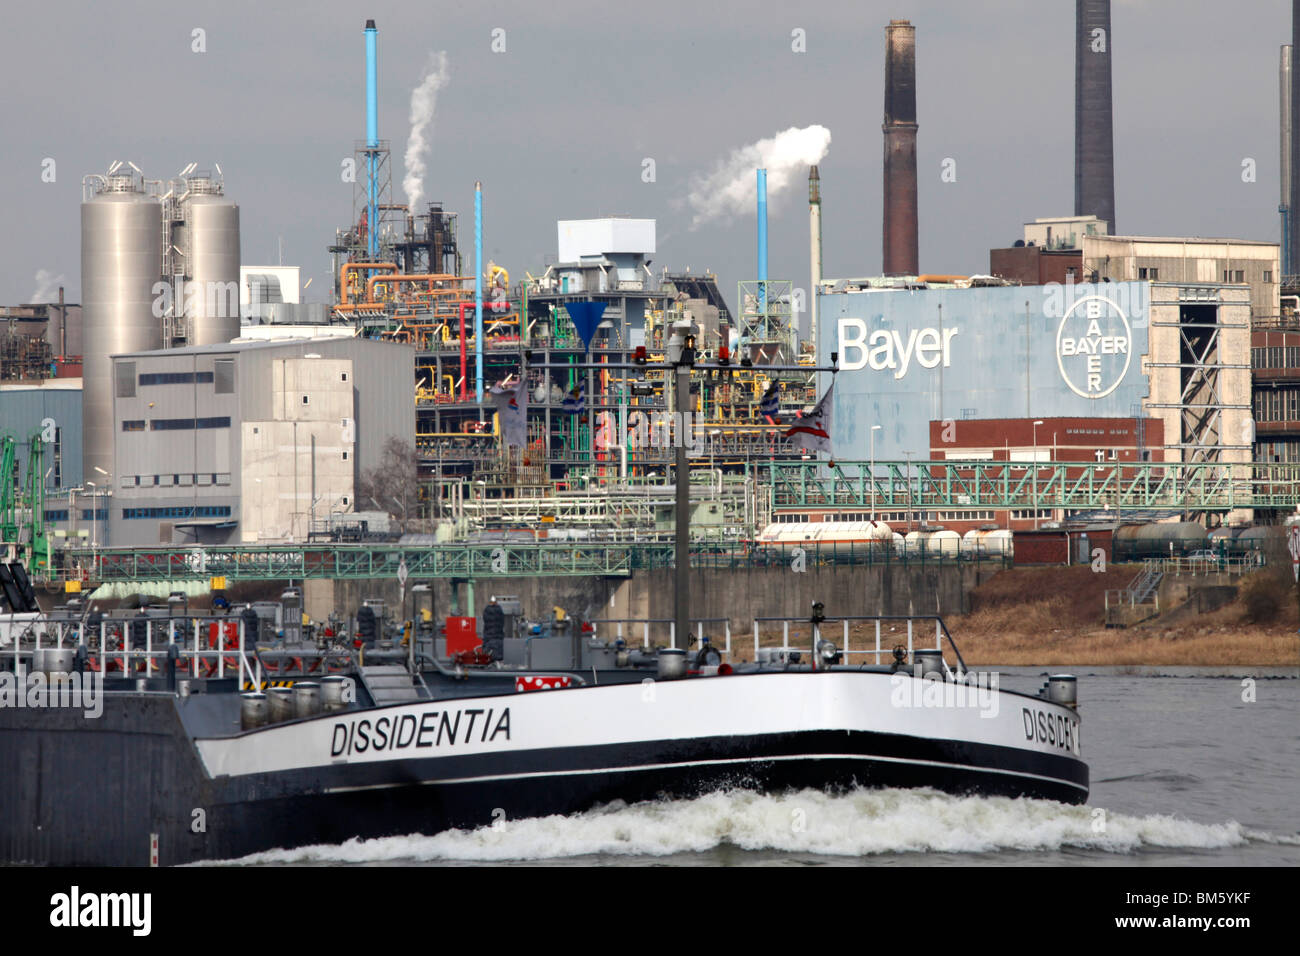 Bayer AG chemical factory in Leverkusen at the rhine. tanker. Leverkusen, NRW, Germany, Europe. Stock Photo